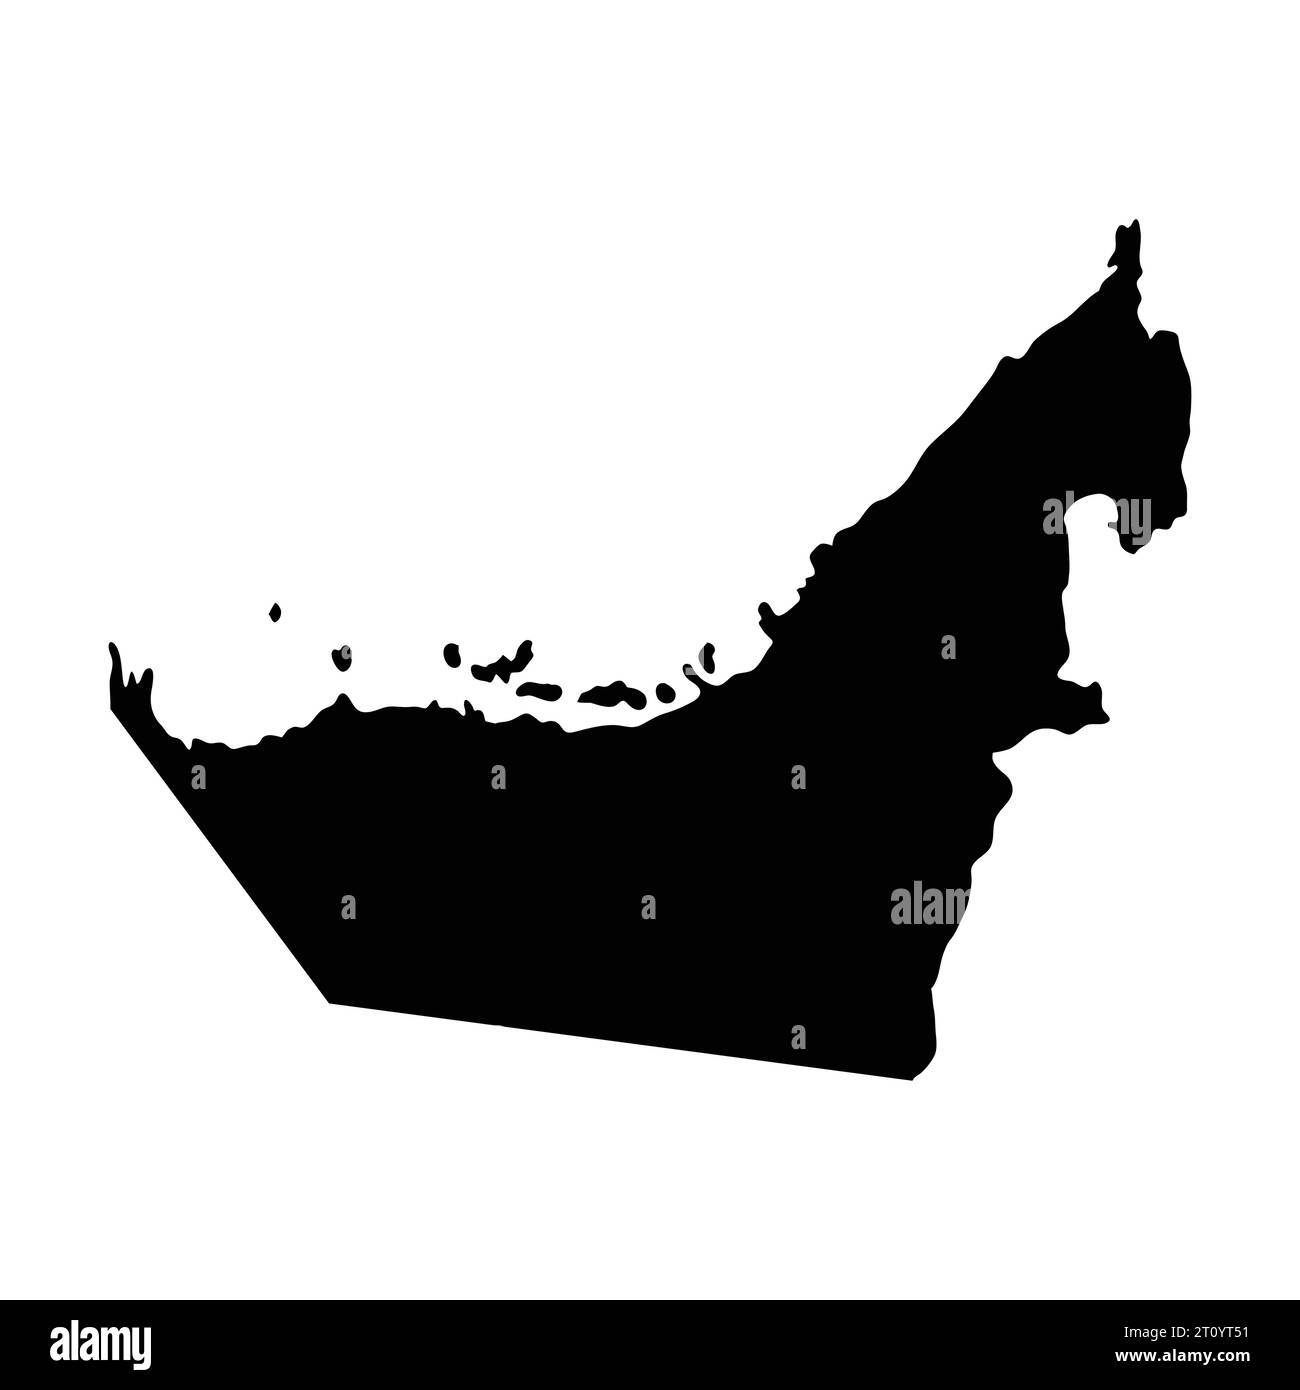 Vereinigte arabische emirate Inselkarte Silhouette Region Territory, schwarze Form Stil Illustration Stock Vektor